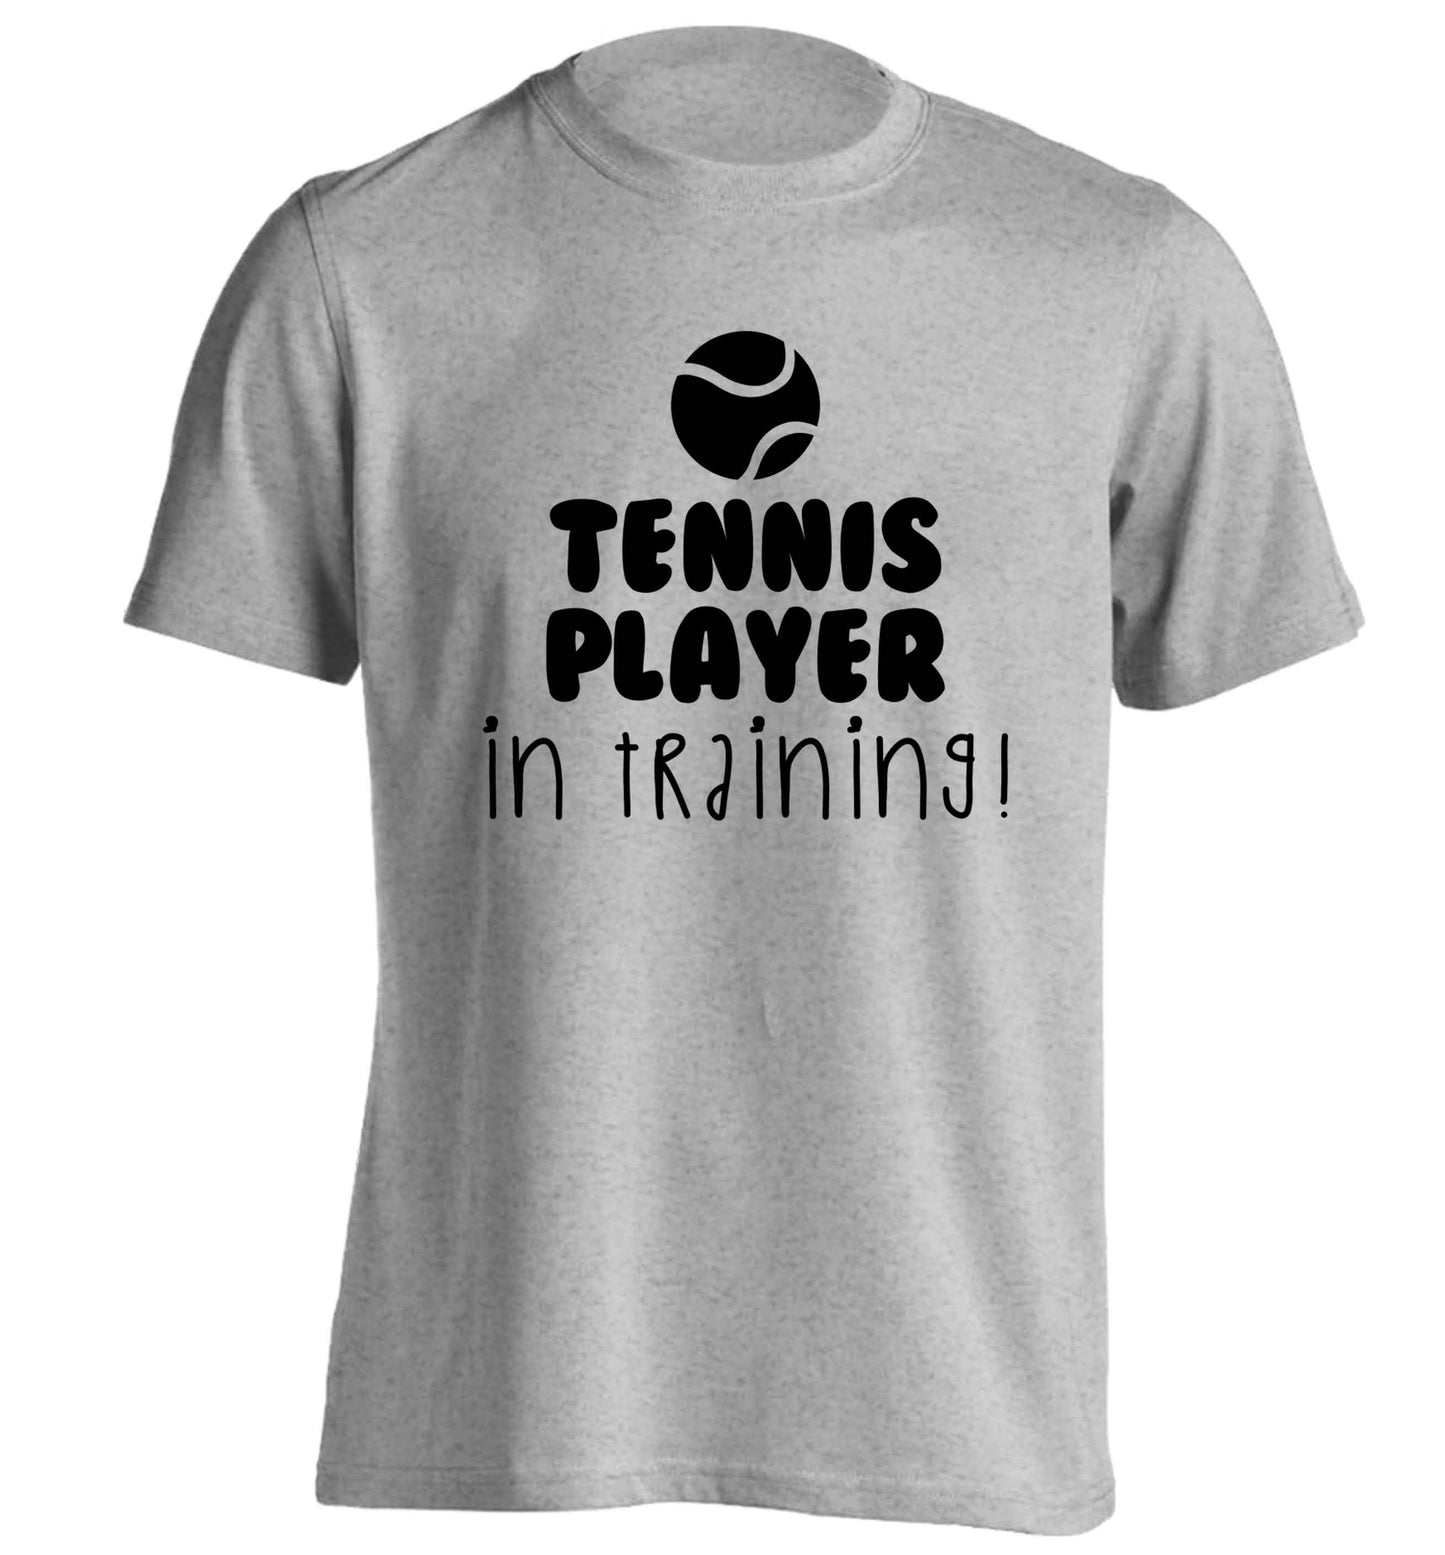 Tennis player in training adults unisex grey Tshirt 2XL